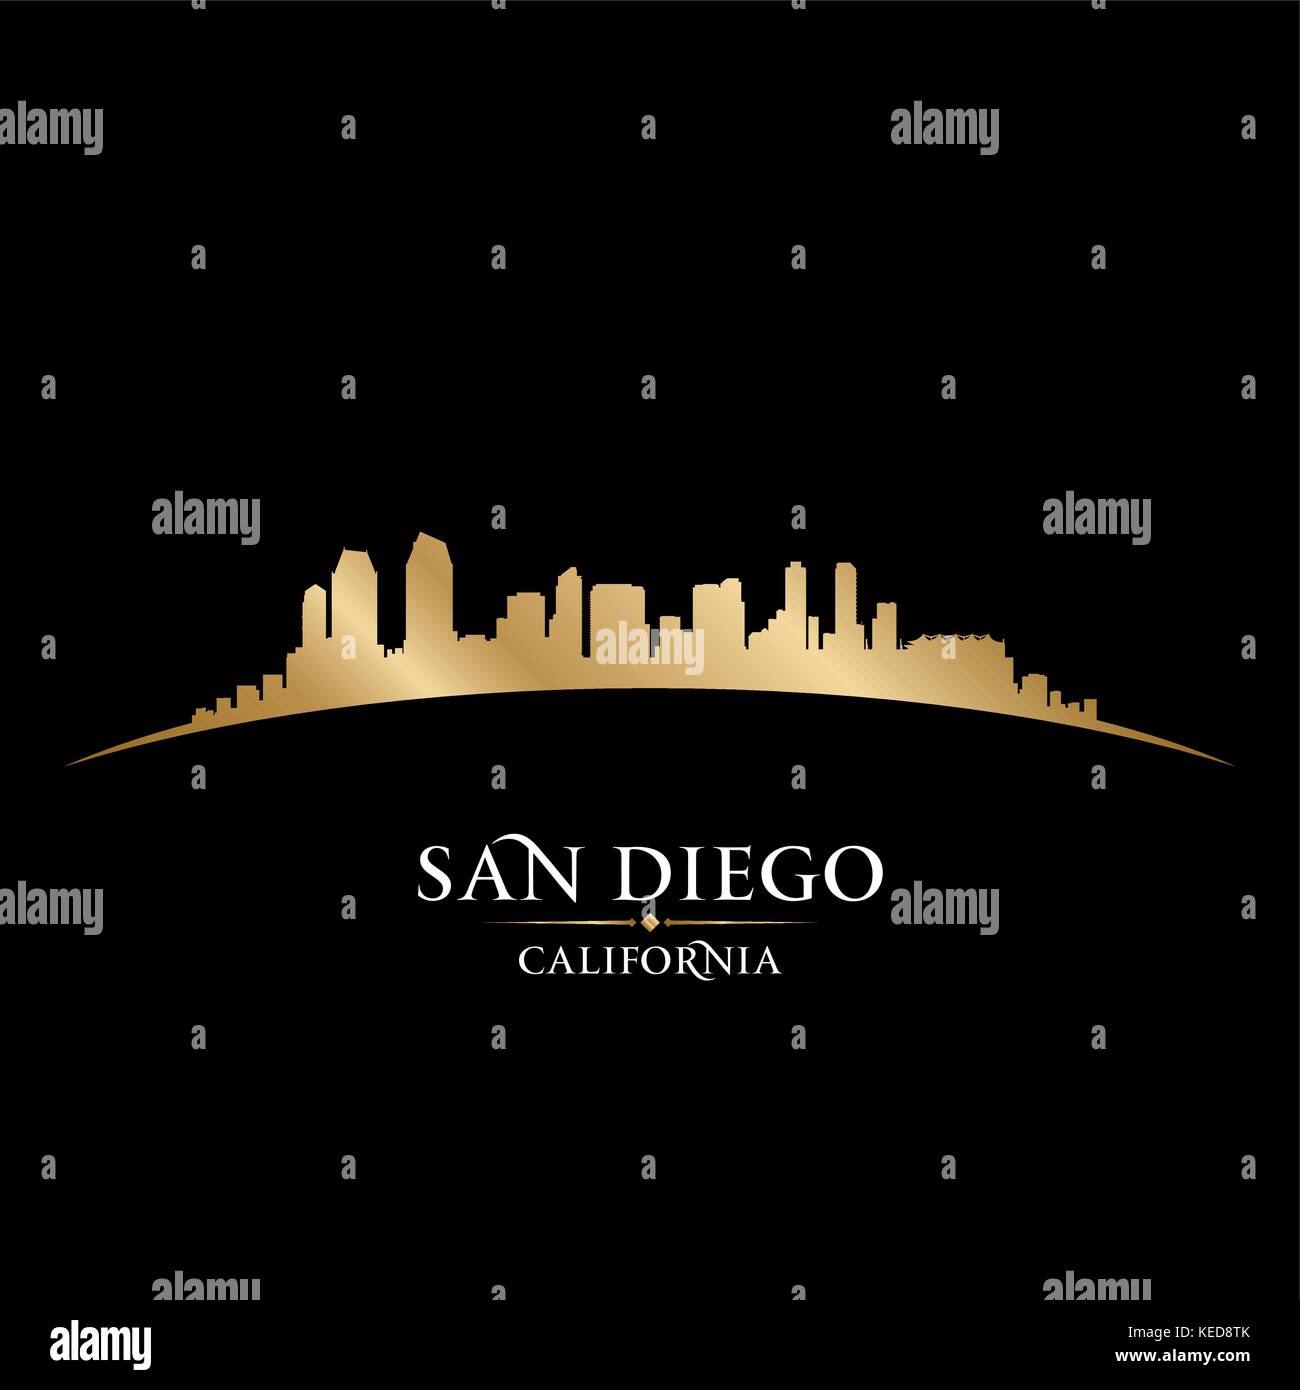 San Diego California city skyline silhouette. Vector illustration Stock Vector